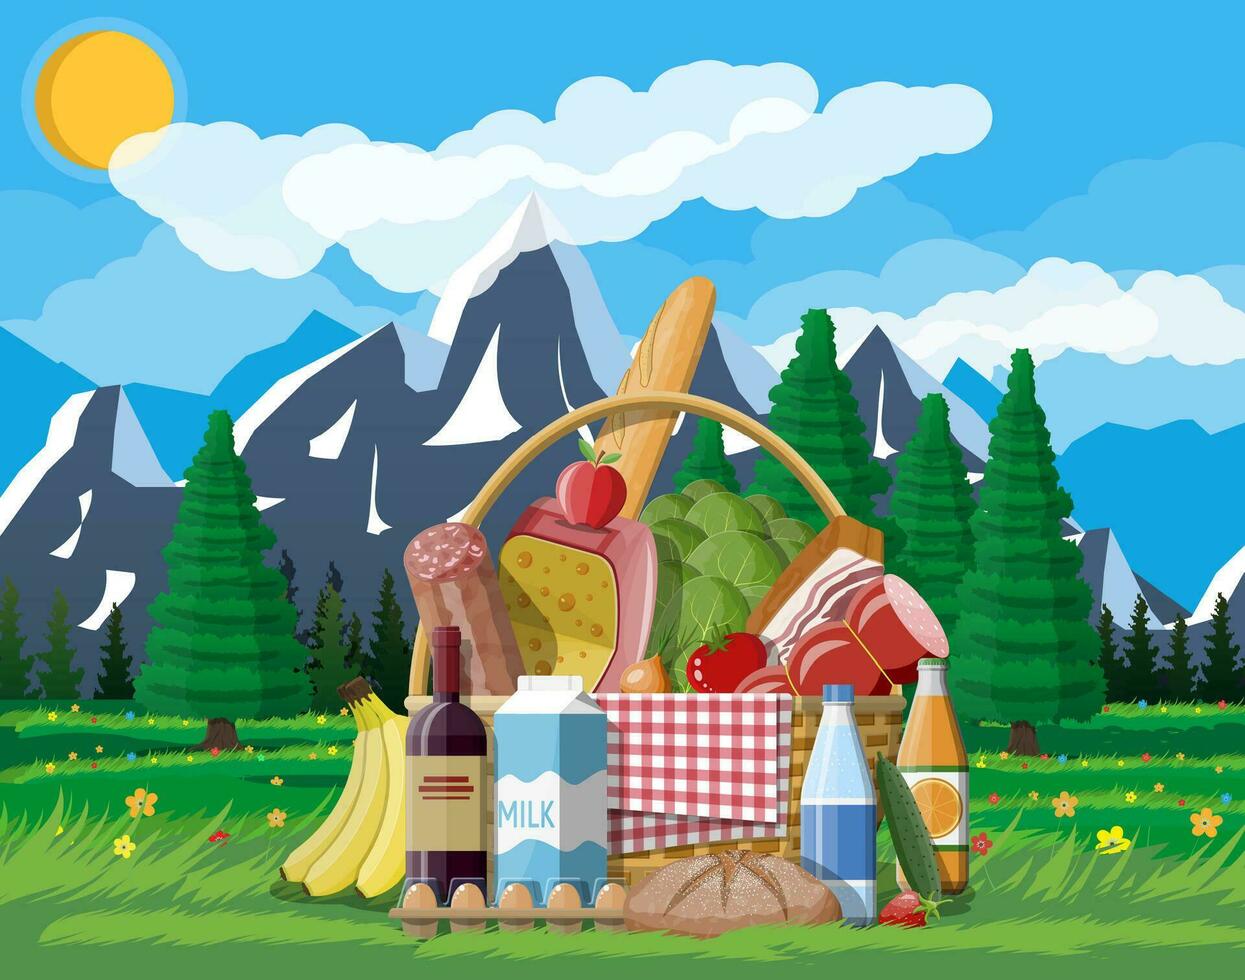 rieten picknick mand vol van producten. wijn, worst, spek en kaas, appel, tomaat, komkommer, salade, oranje sap. gras, bloemen, lucht met wolken en zon. vector illustratie in vlak stijl